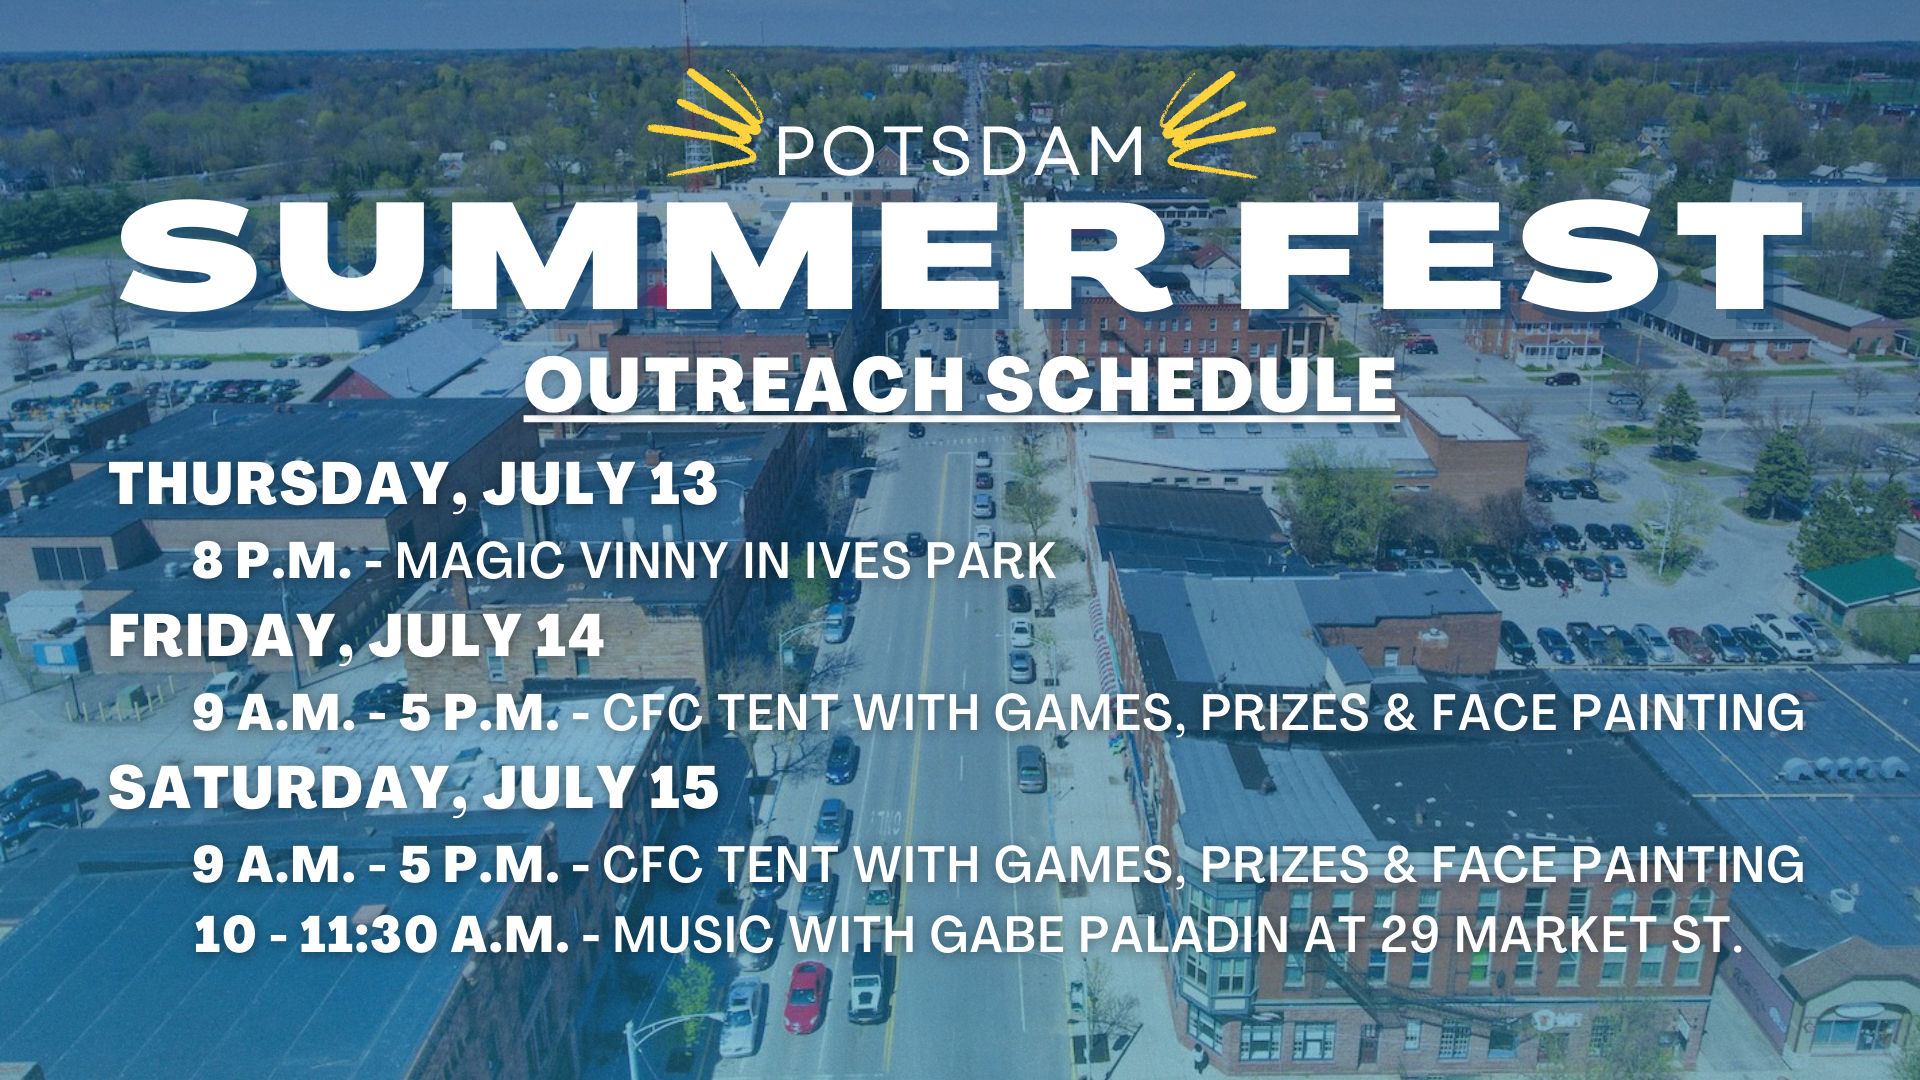 Summer Fest Schedule image